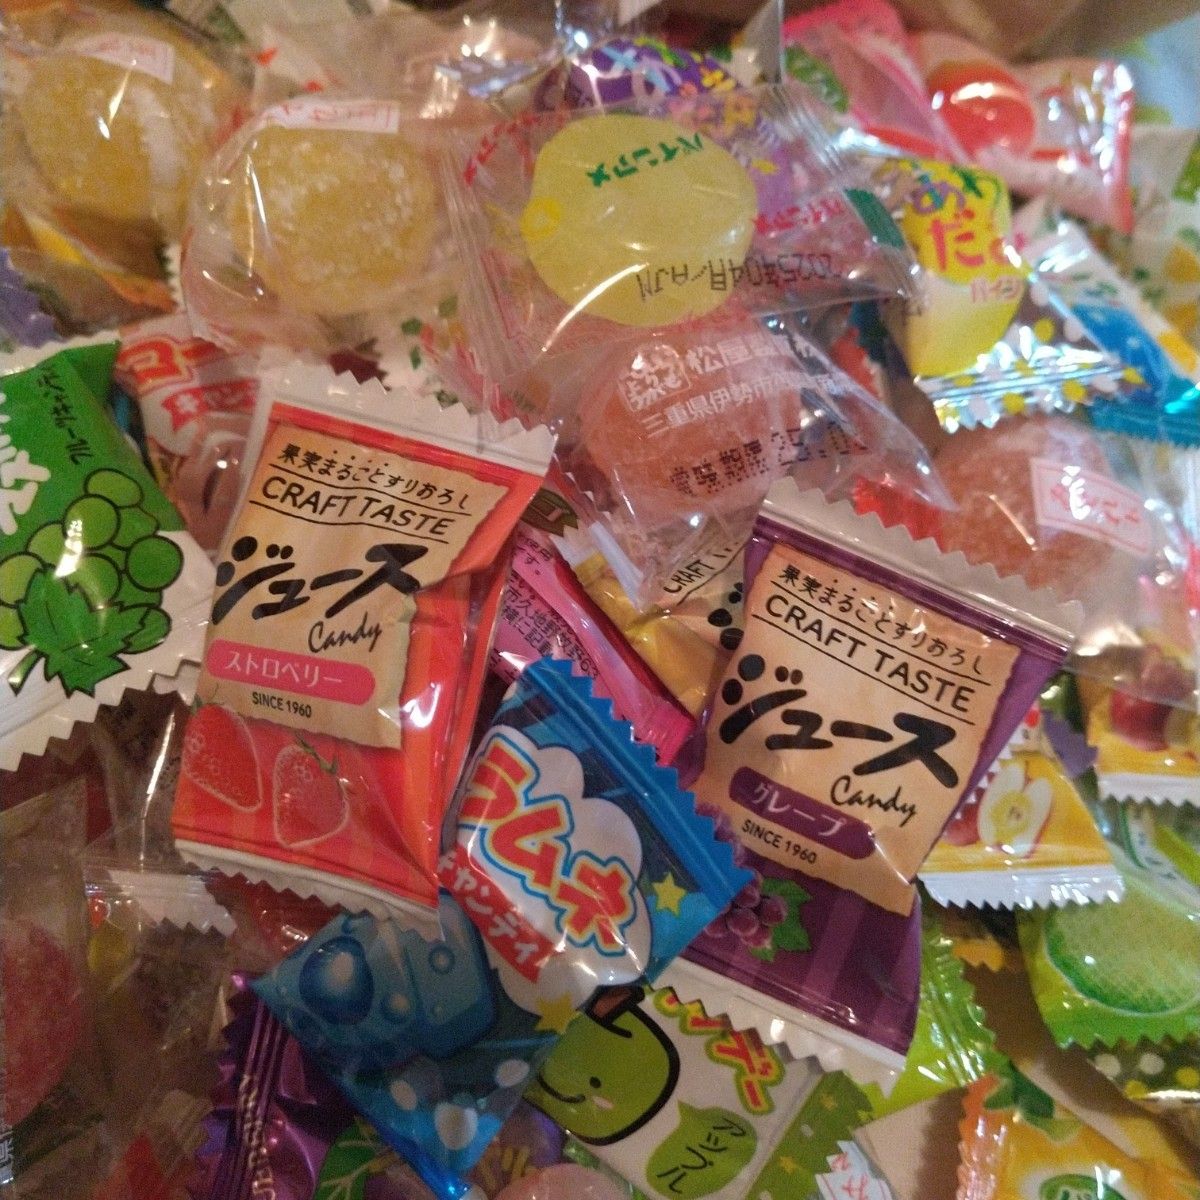 飴・パインアメ・あわだま・れもんこりっと・いちごミルク・ジュースアメ・フルーツキャンディー他飴詰め合わせまとめ売り190個